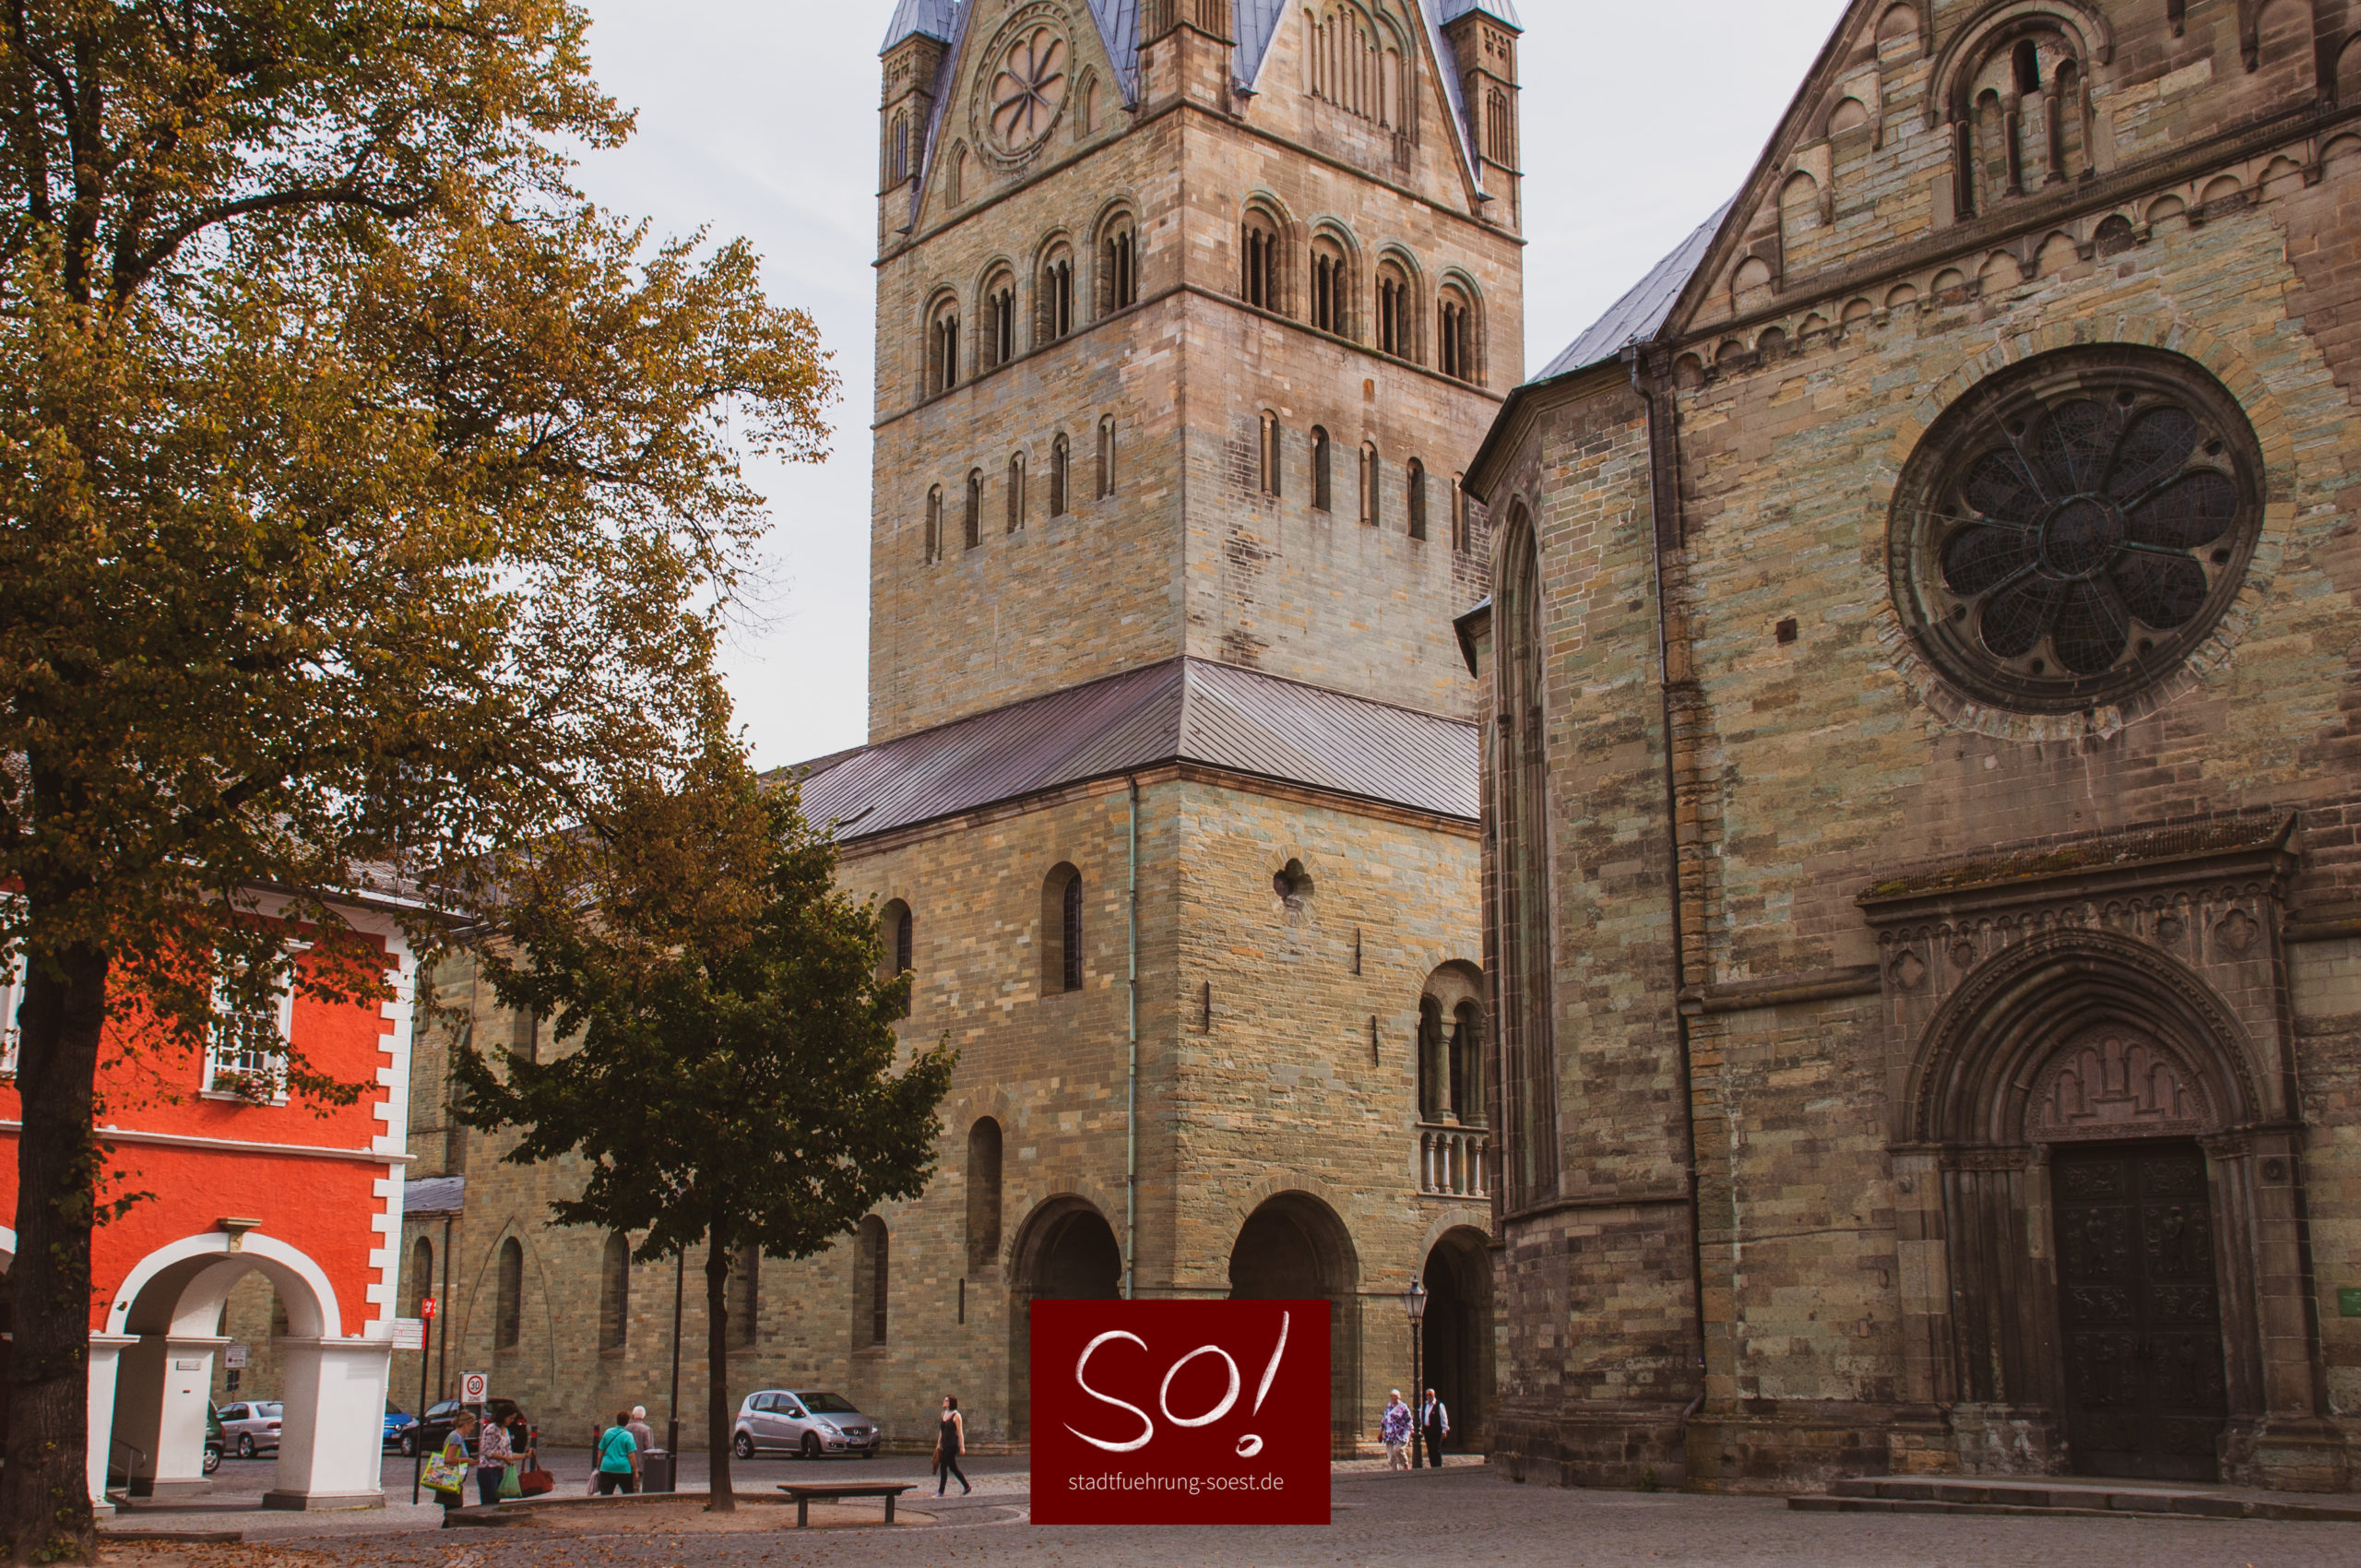 Dom, Petrikirche und Rathaus in Soest